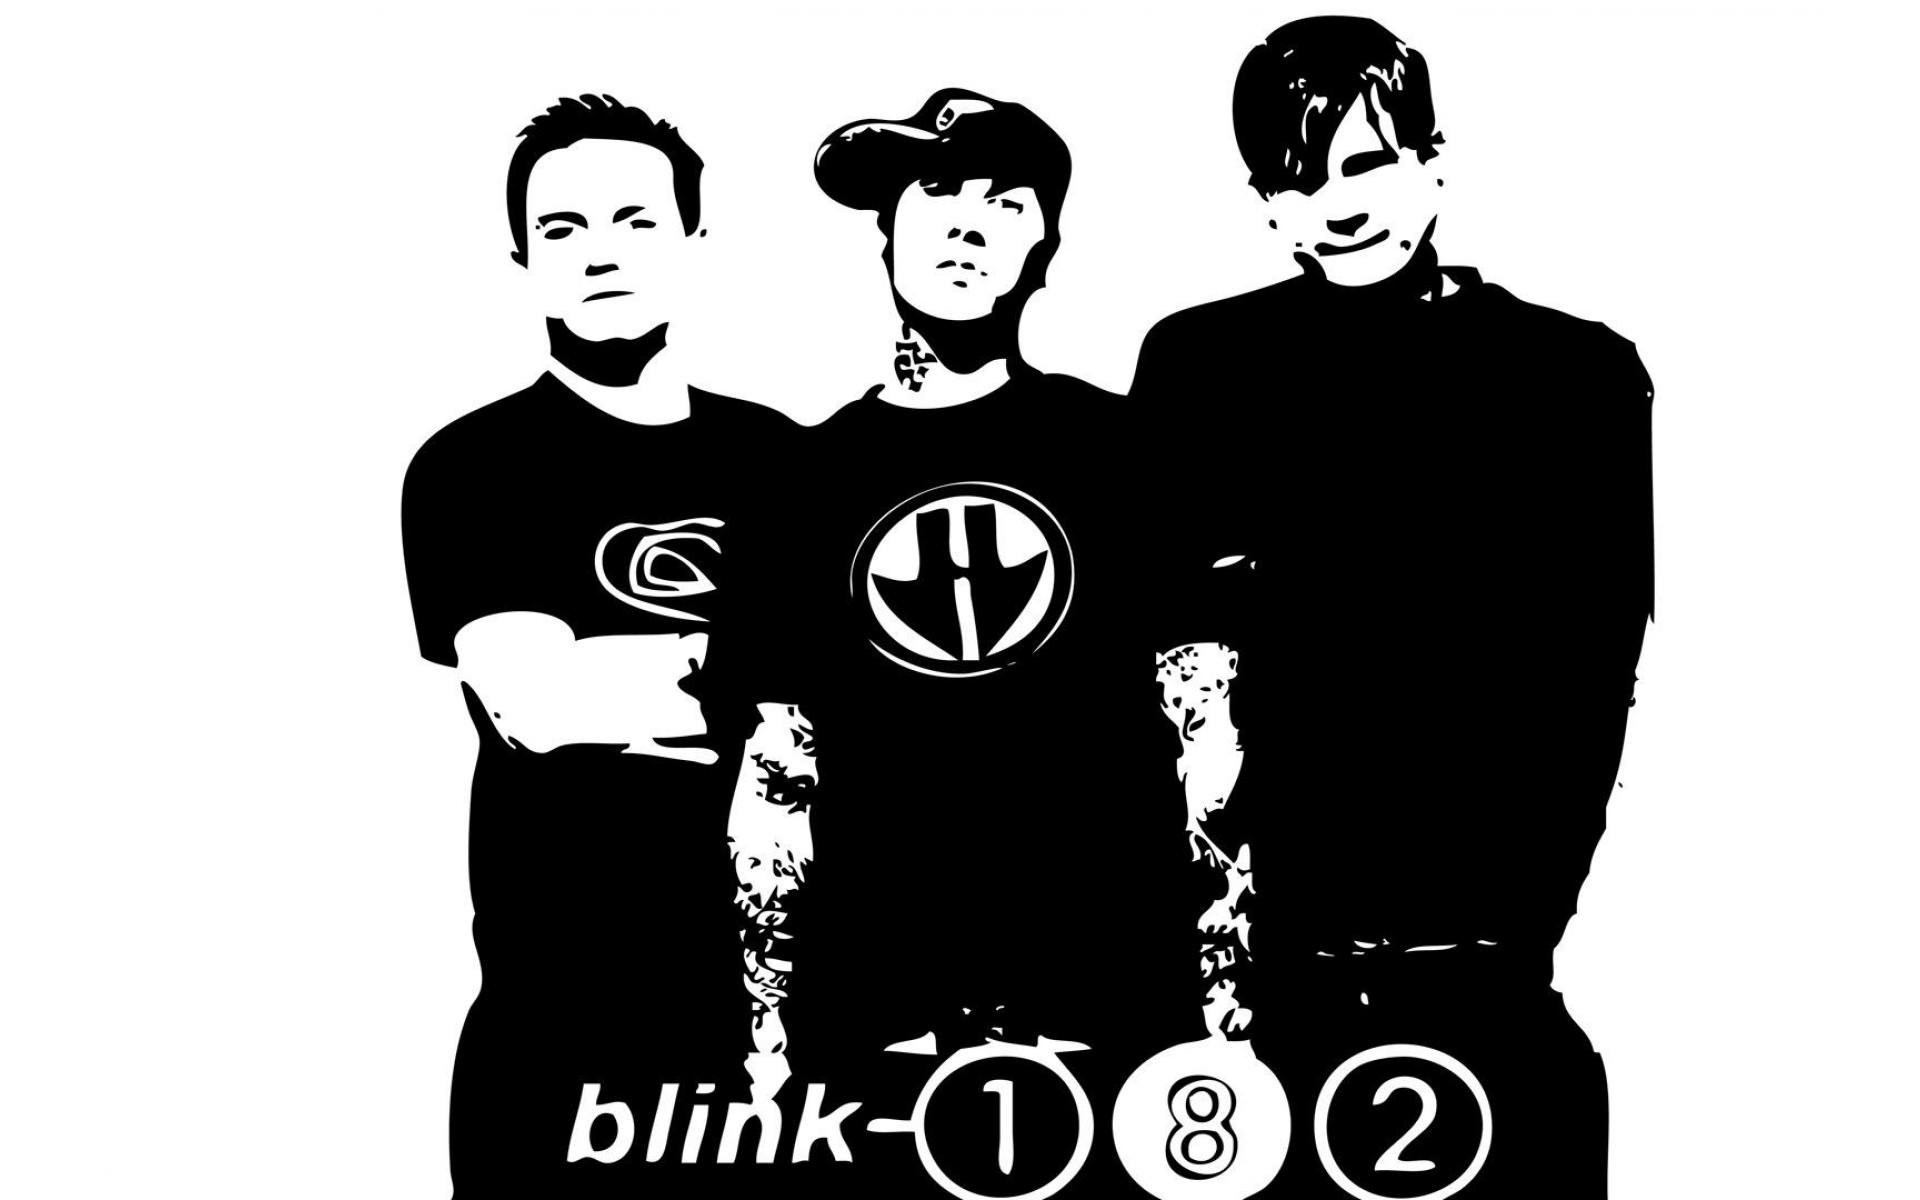 BLINK-182 pop punk alternative rock hard blink 182 wallpaper | | 549203 |  WallpaperUP